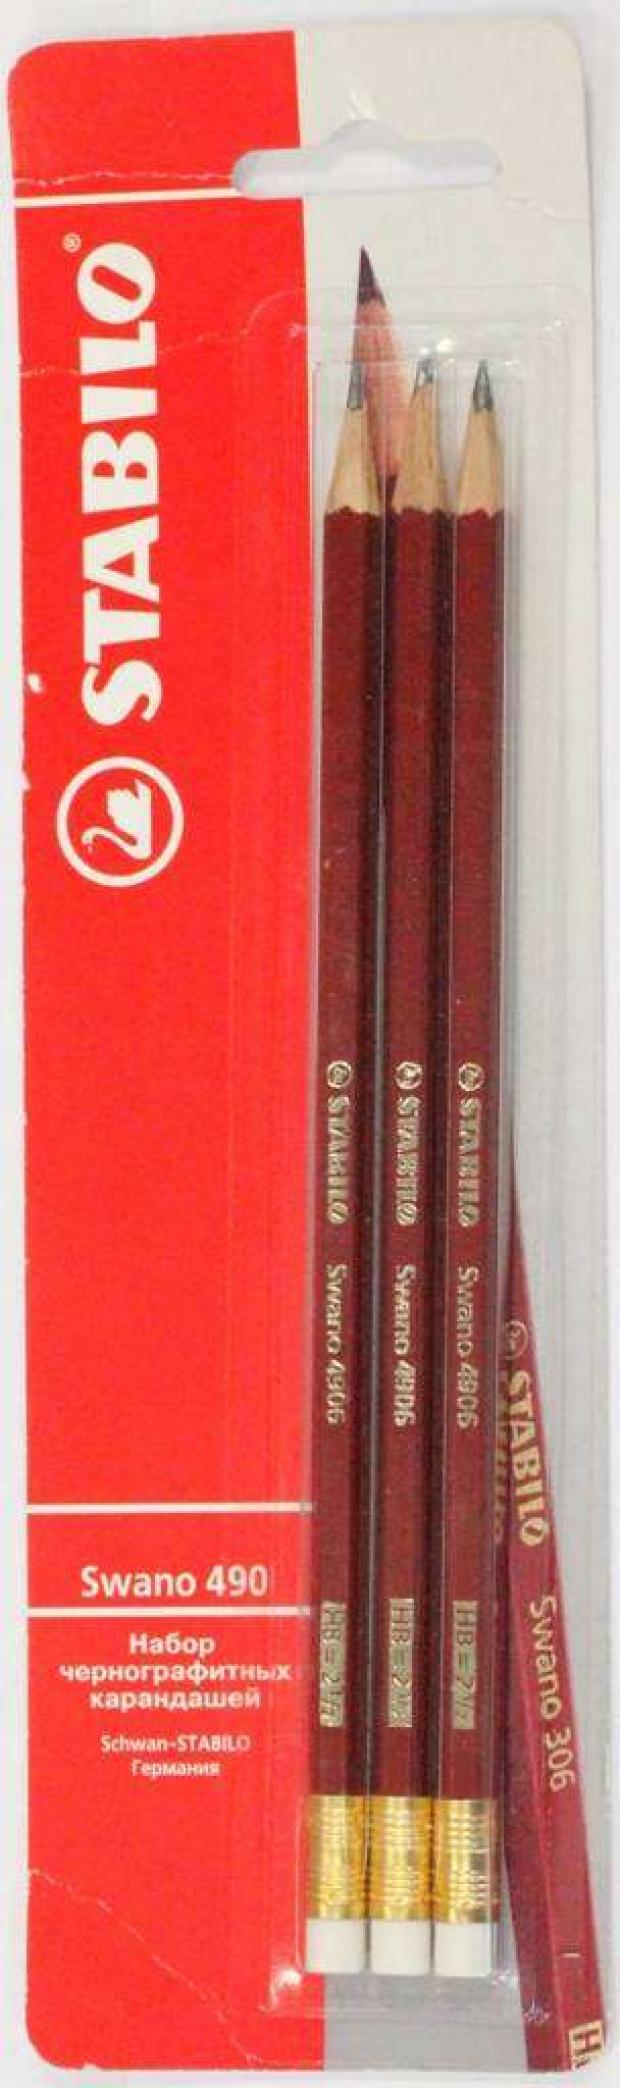 Фото - Набор чернографитных карандашей Stabilo Swano с ластиком, 3 шт набор карандашей чернографитных brauberg g 100 4 шт hb с ластиком корпус ассорти 181715